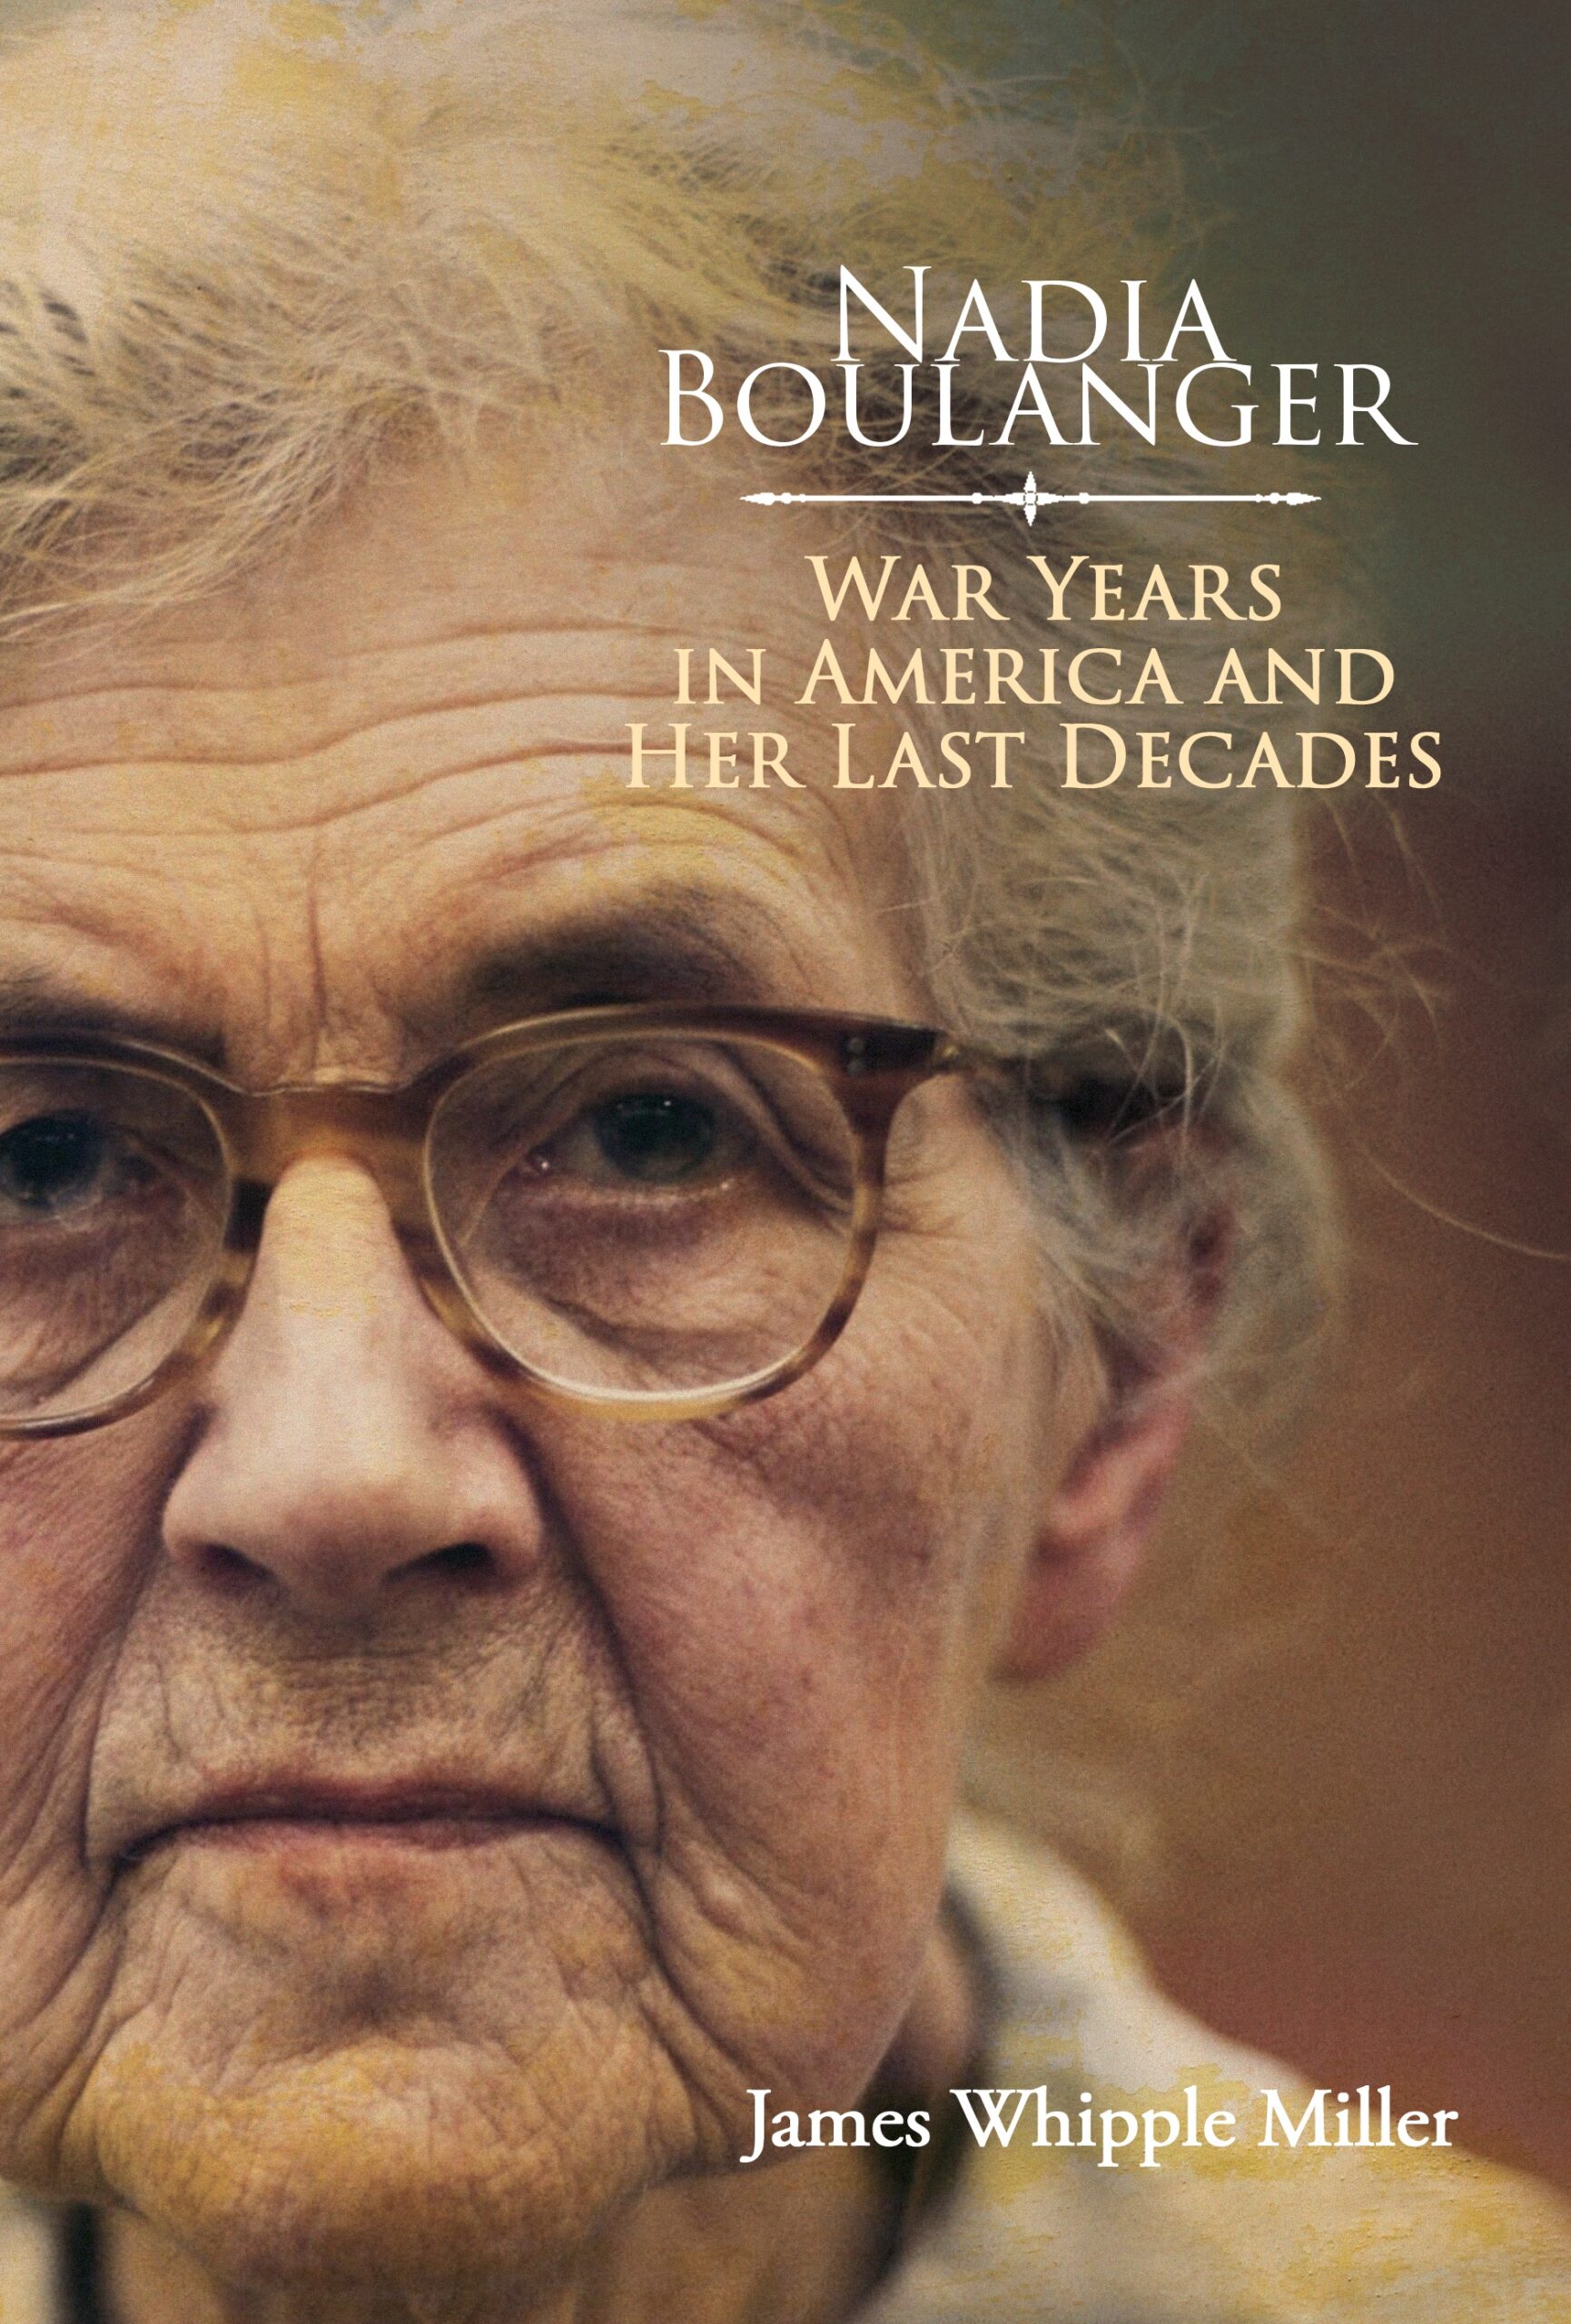 Nadia Boulanger by James Whipple Miller